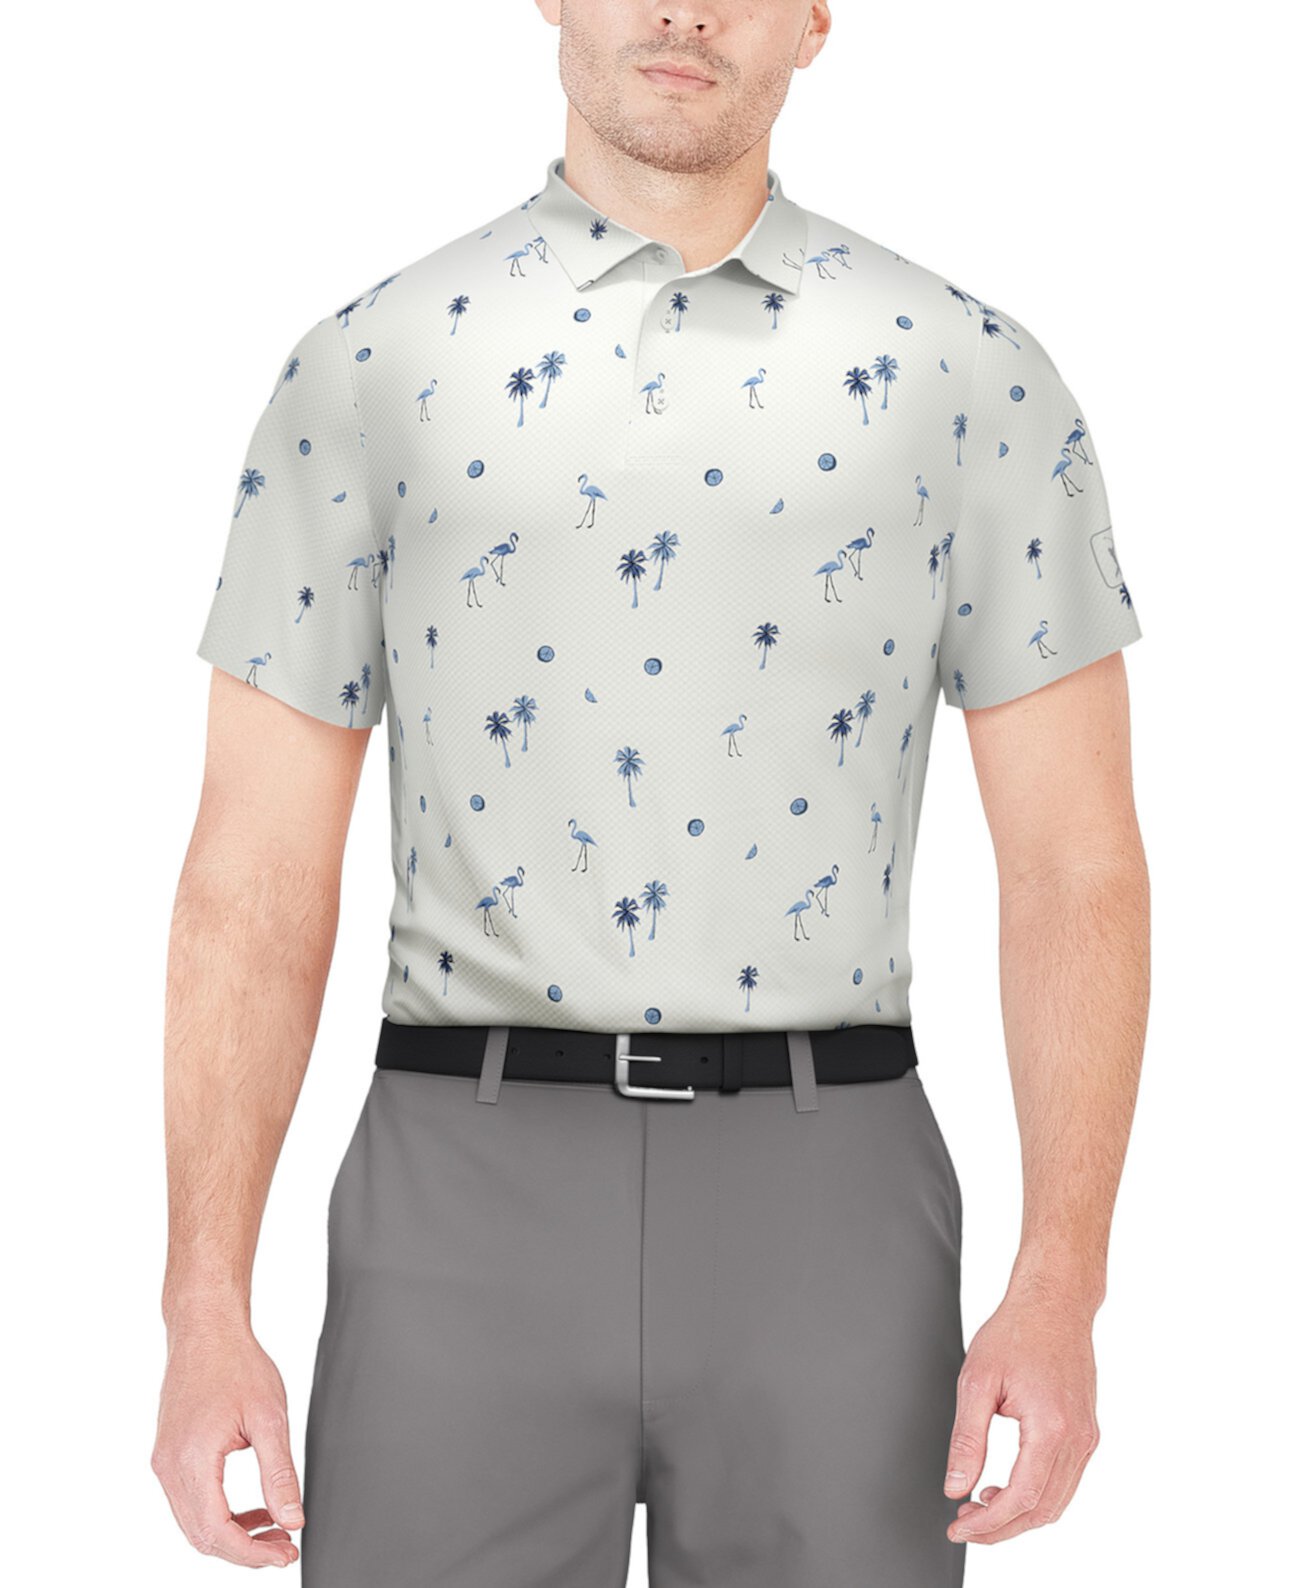 Мужская рубашка-поло для гольфа с принтом фламинго и короткими рукавами PGA TOUR